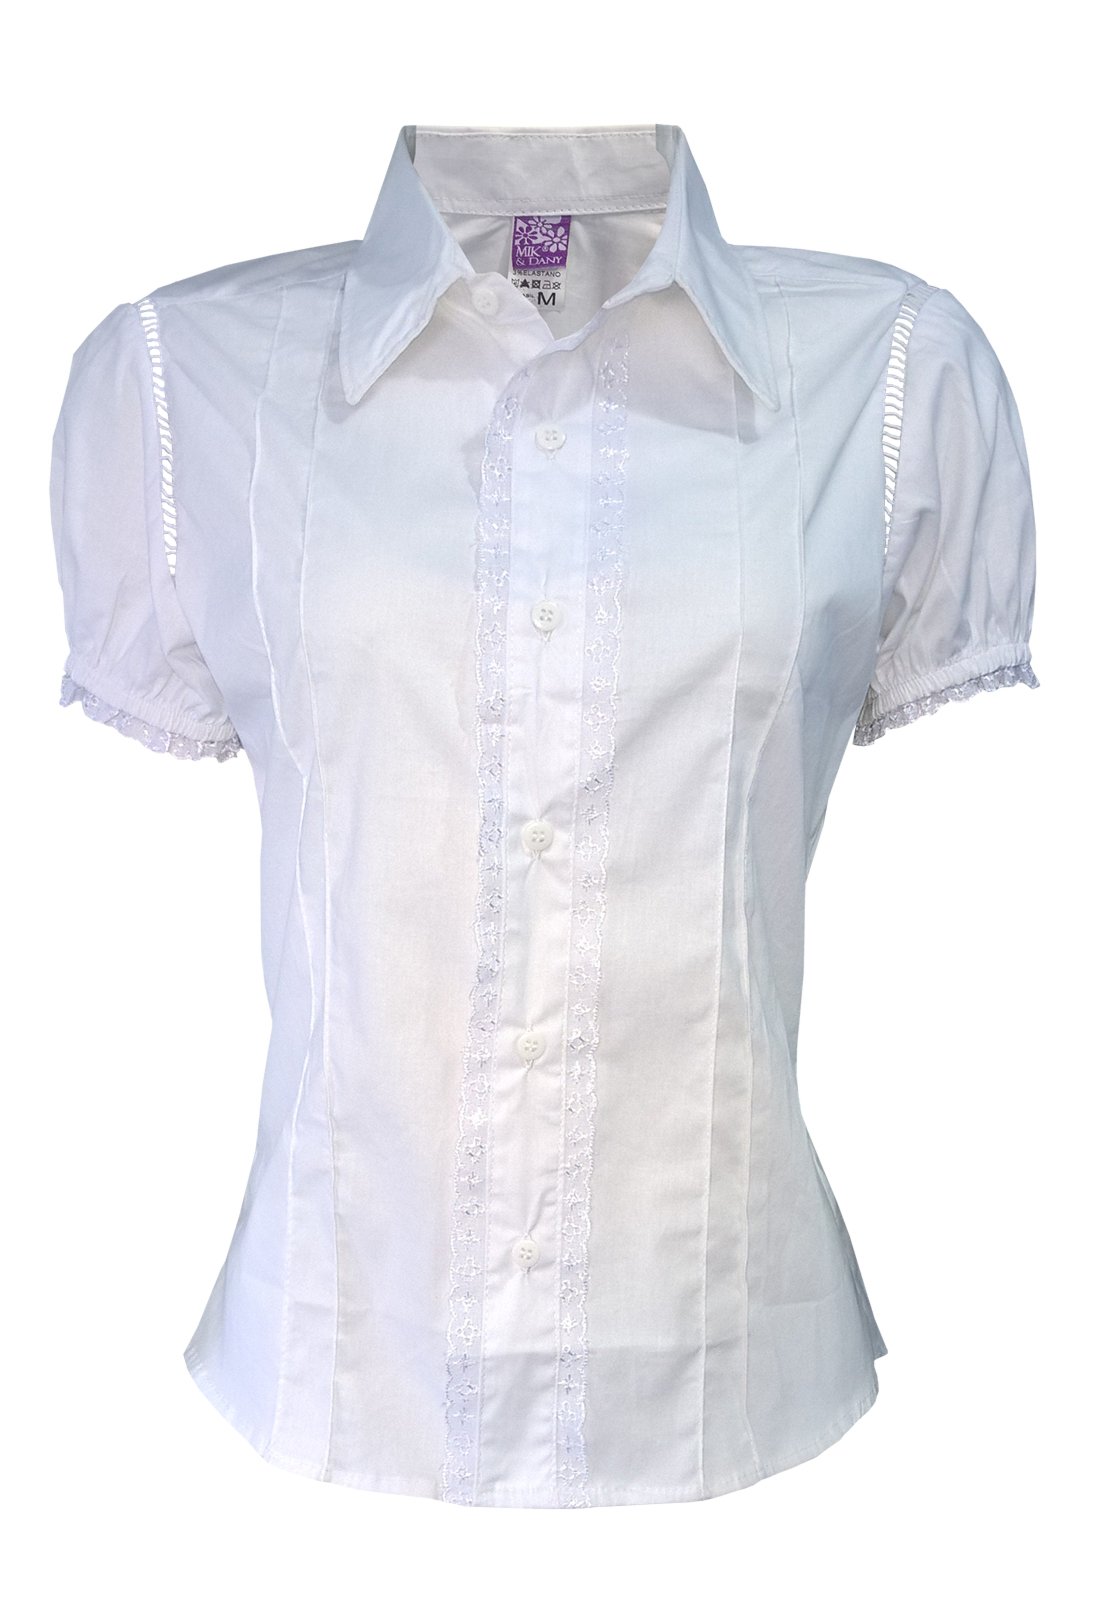 blusa branca social feminina manga curta